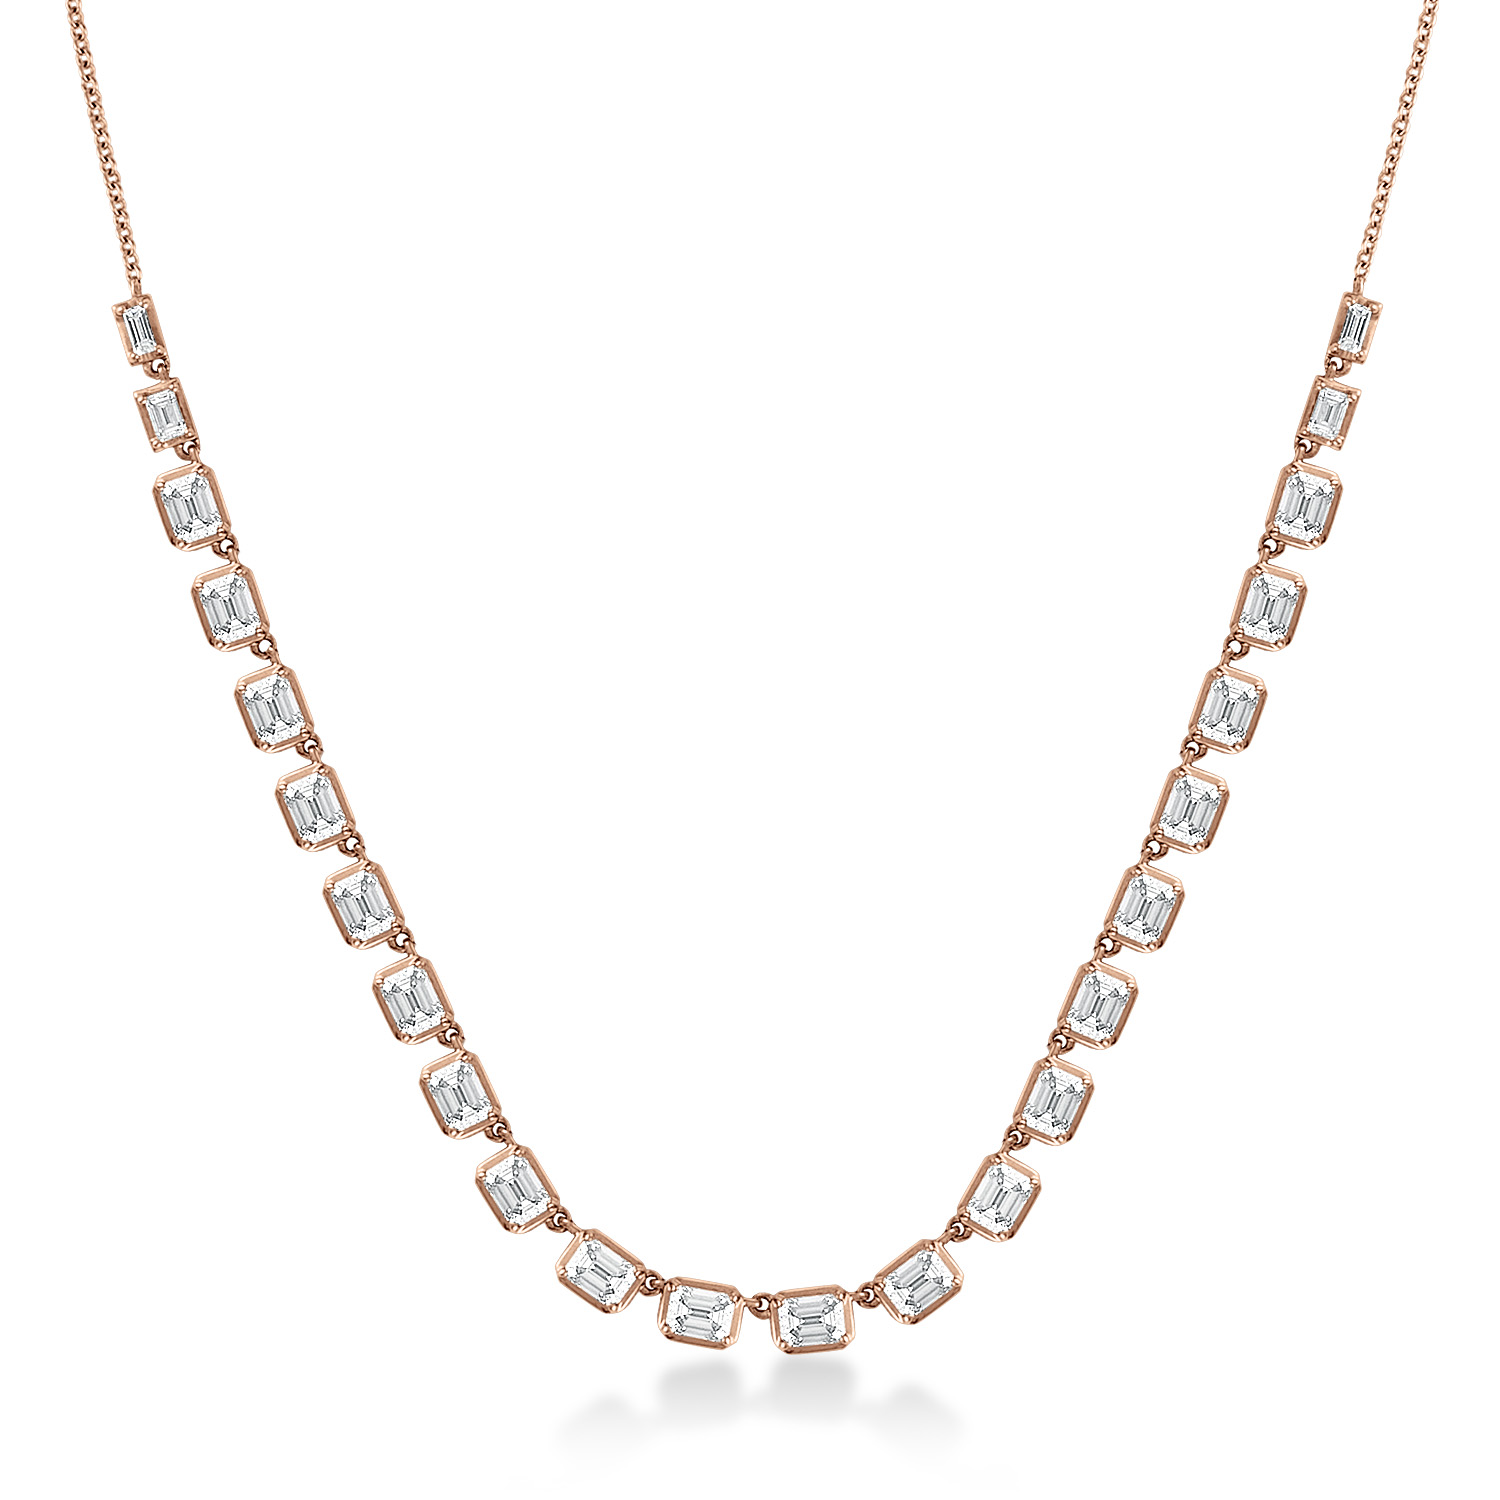 24 stone diamond tennis necklace